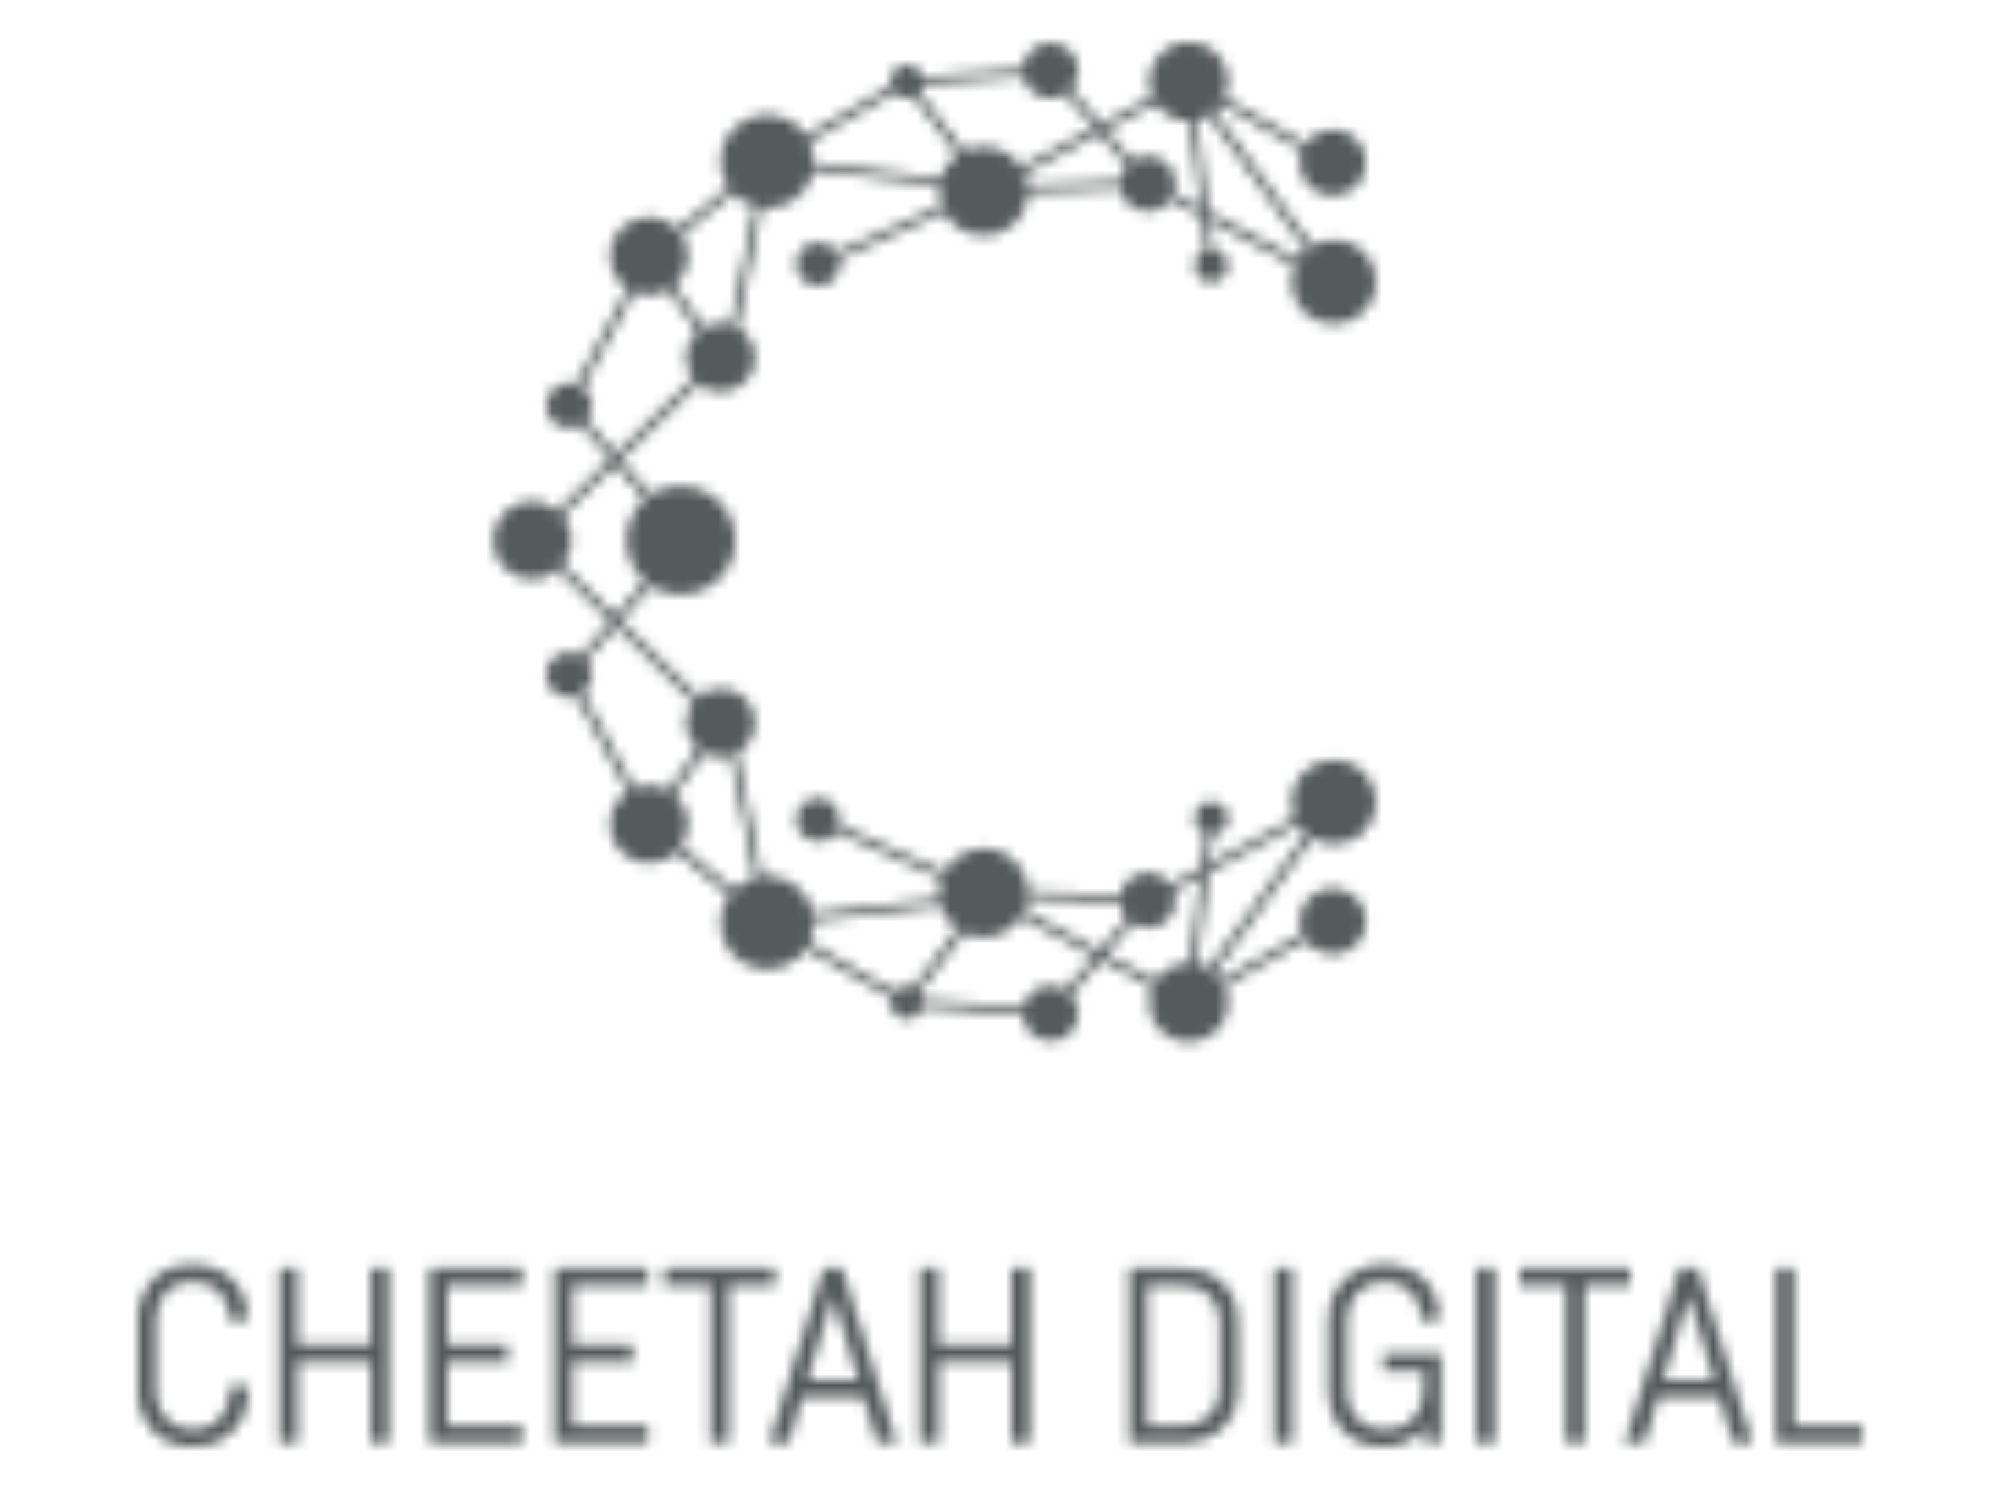 チーターデジタル株式会社_logo